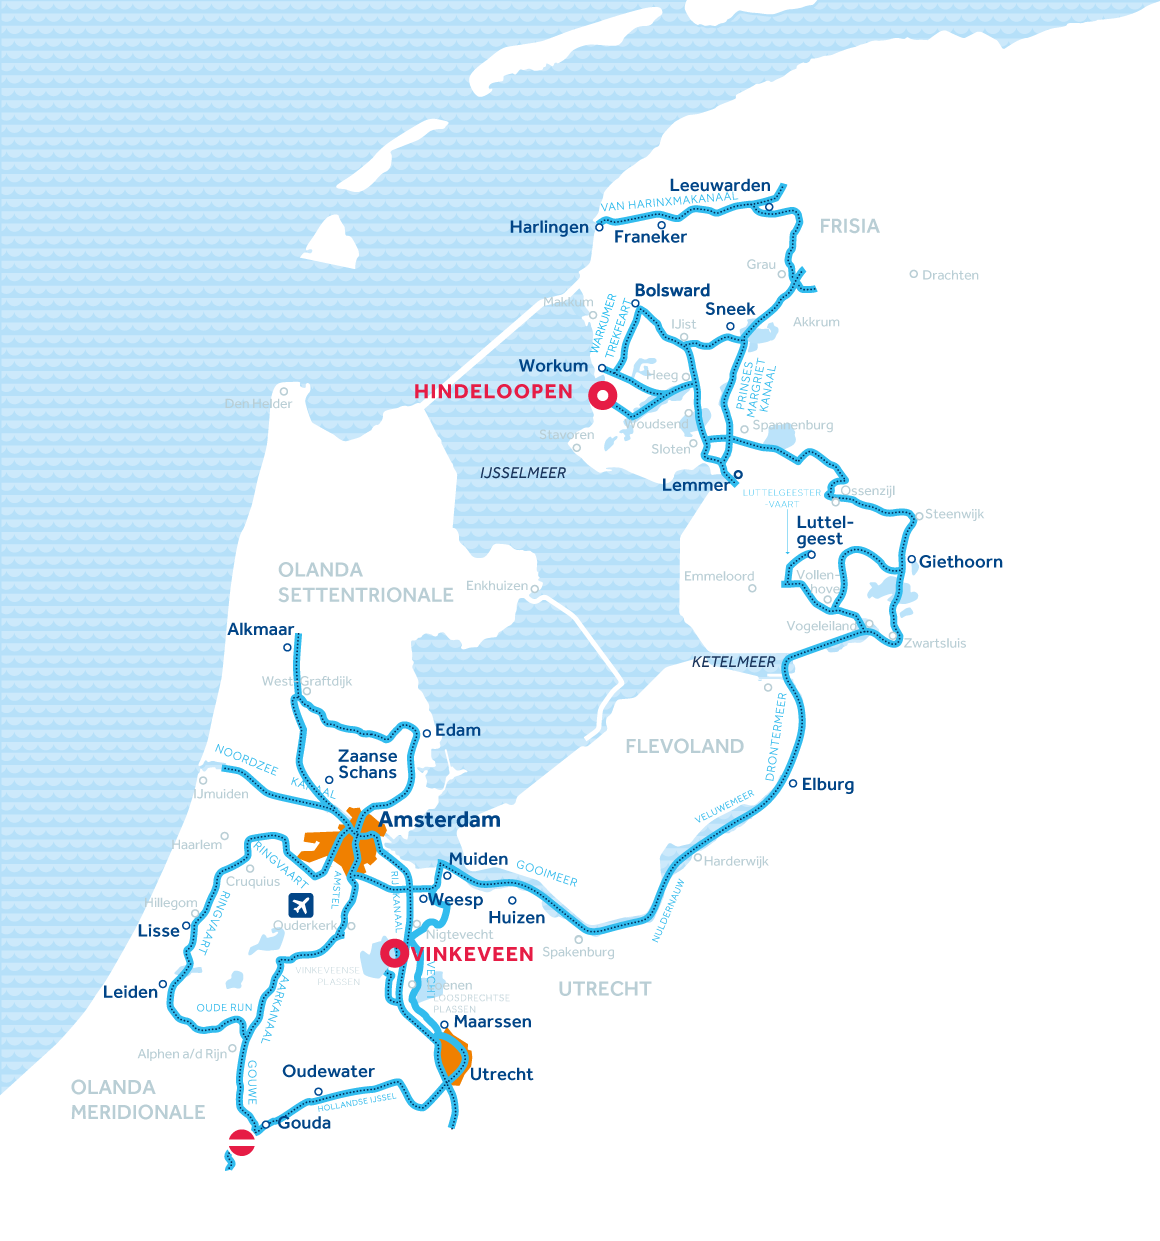 Mappa: Olanda, Amsterdam e Frisia